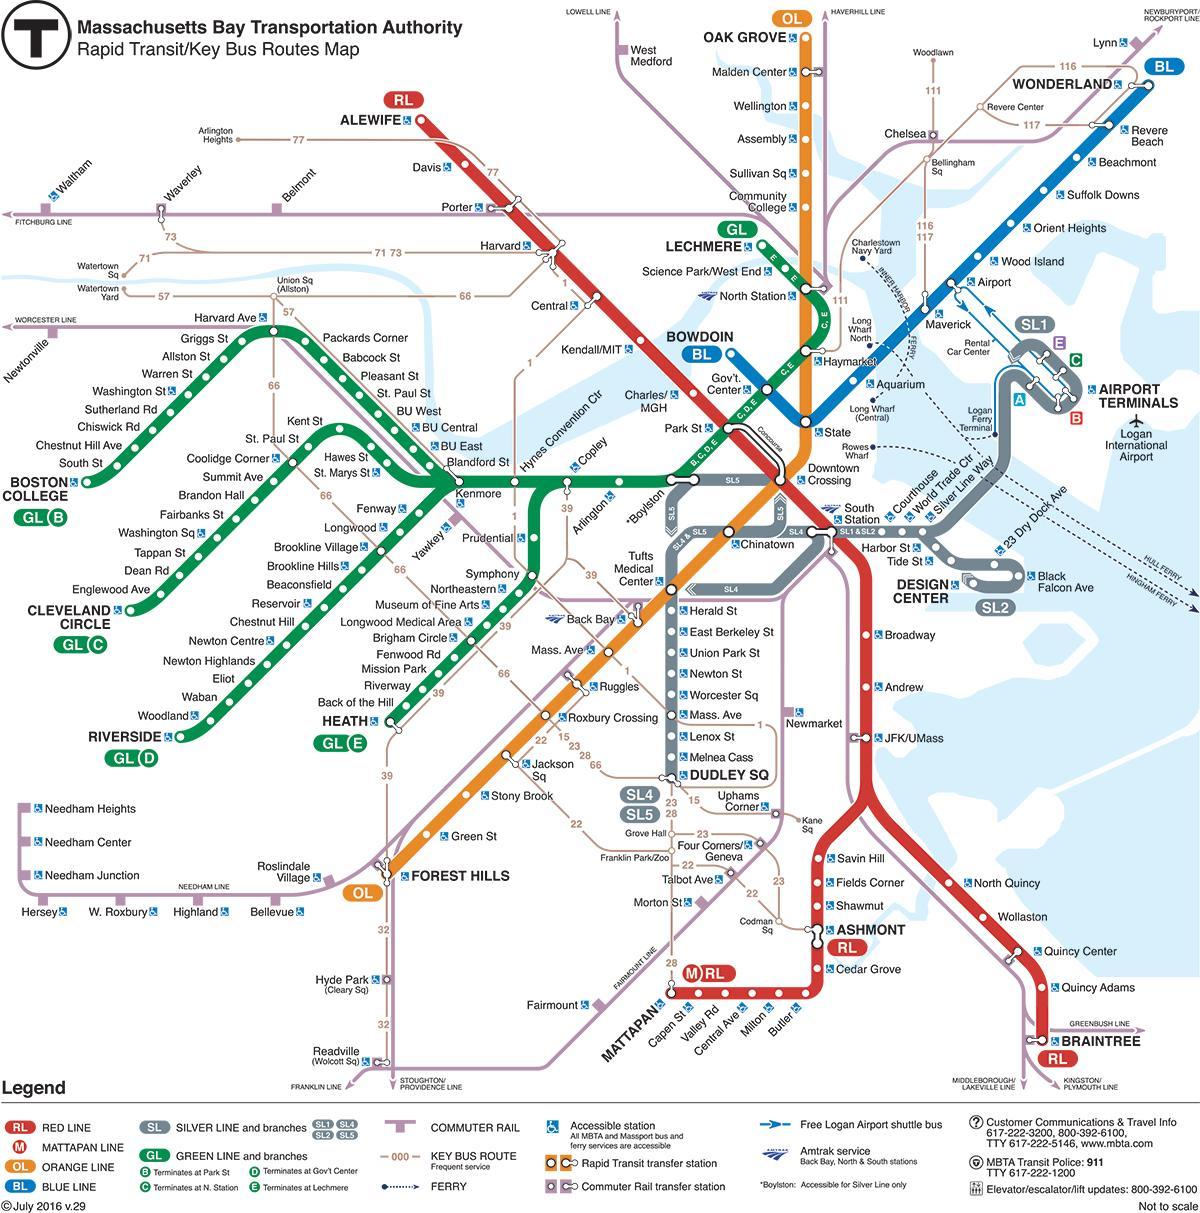 الخط الأخضر خريطة بوسطن